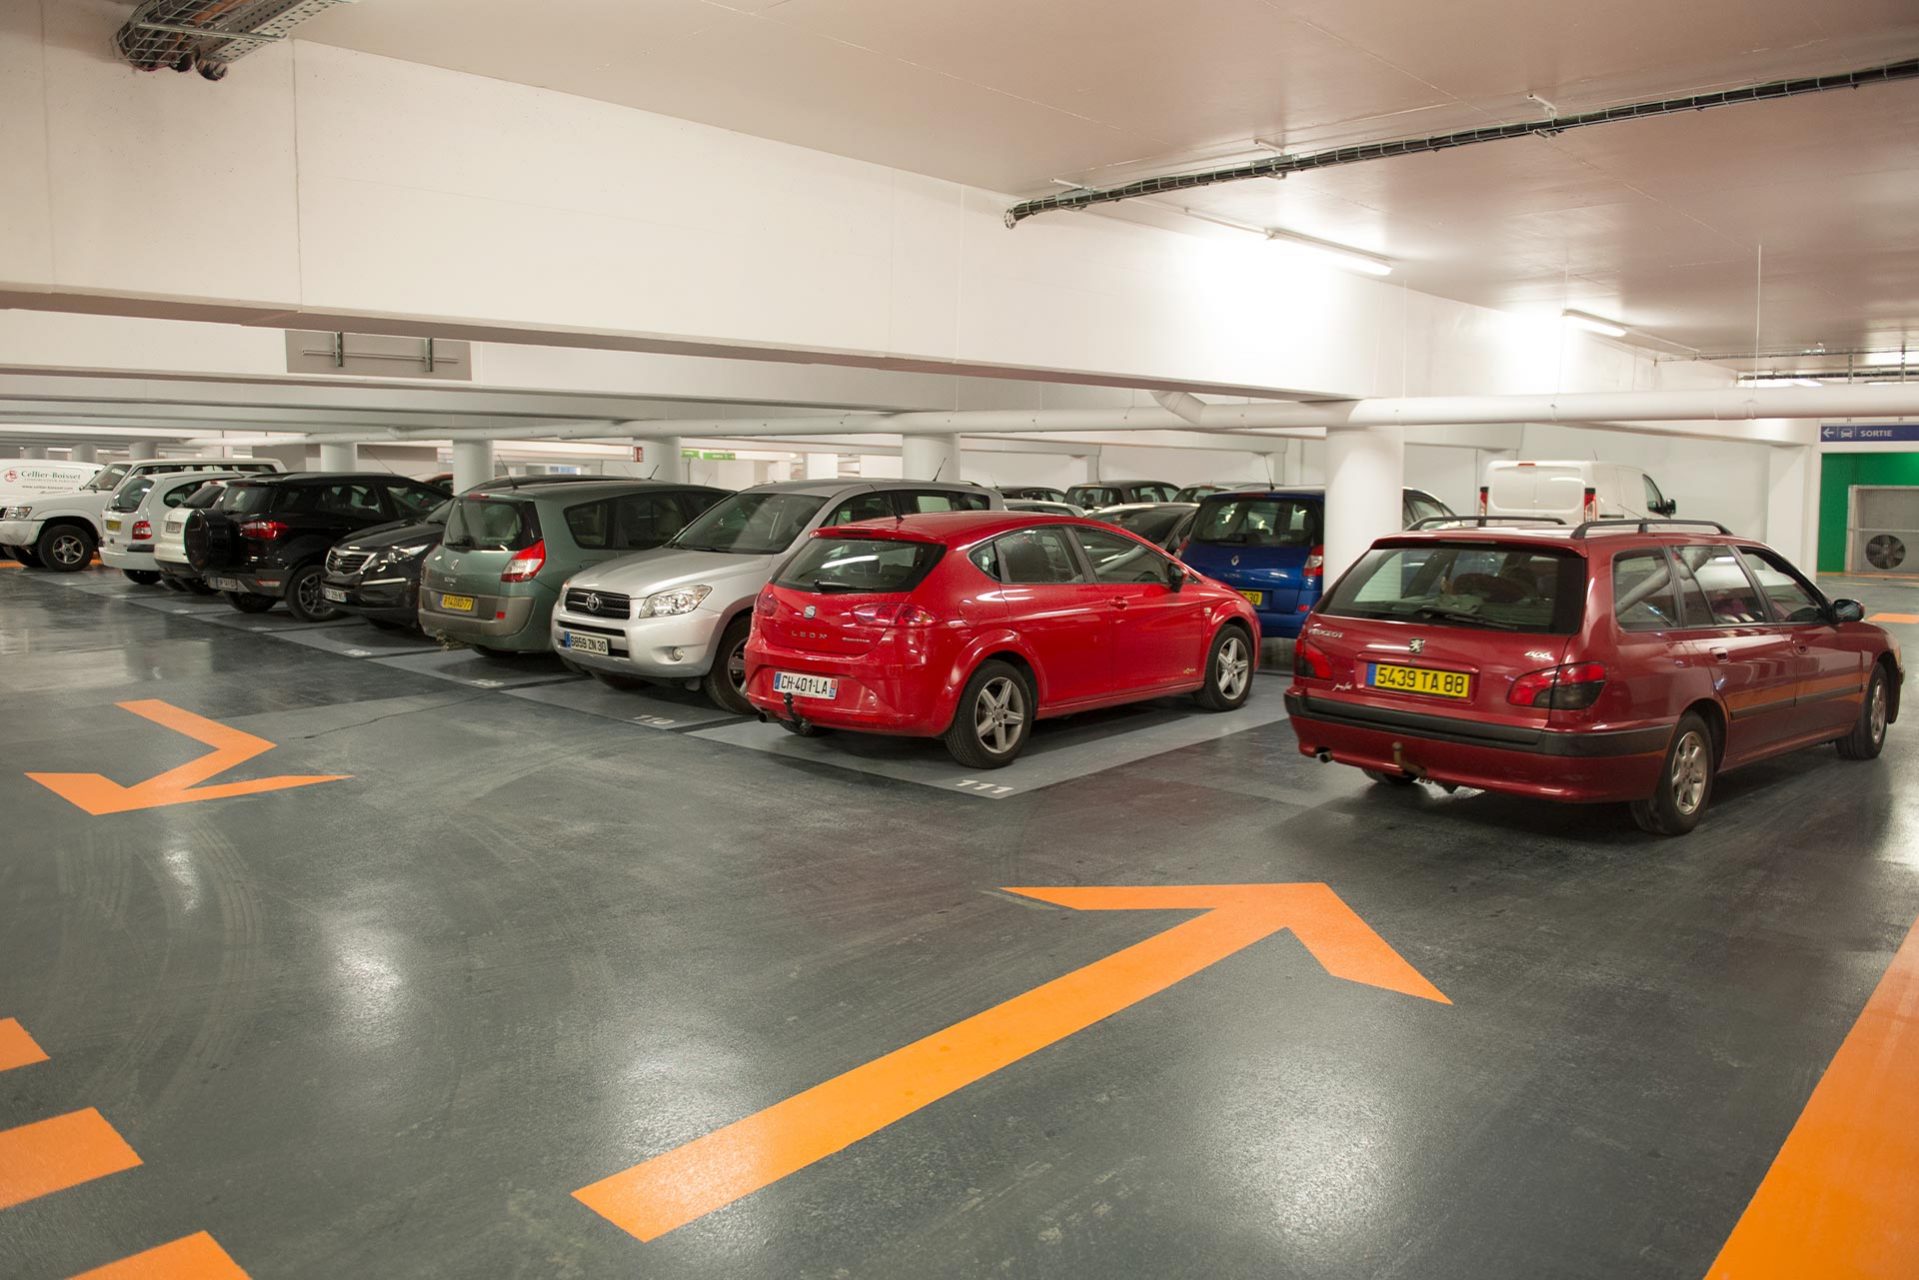 La 1re heure de stationnement est offerte pour les 2 160 places disponibles dans les parkings souterrains de La Maréchale, du Centr’Alès, de l’Abbaye, de la place des Martyrs-de-la-Résitance et du Gardon bas